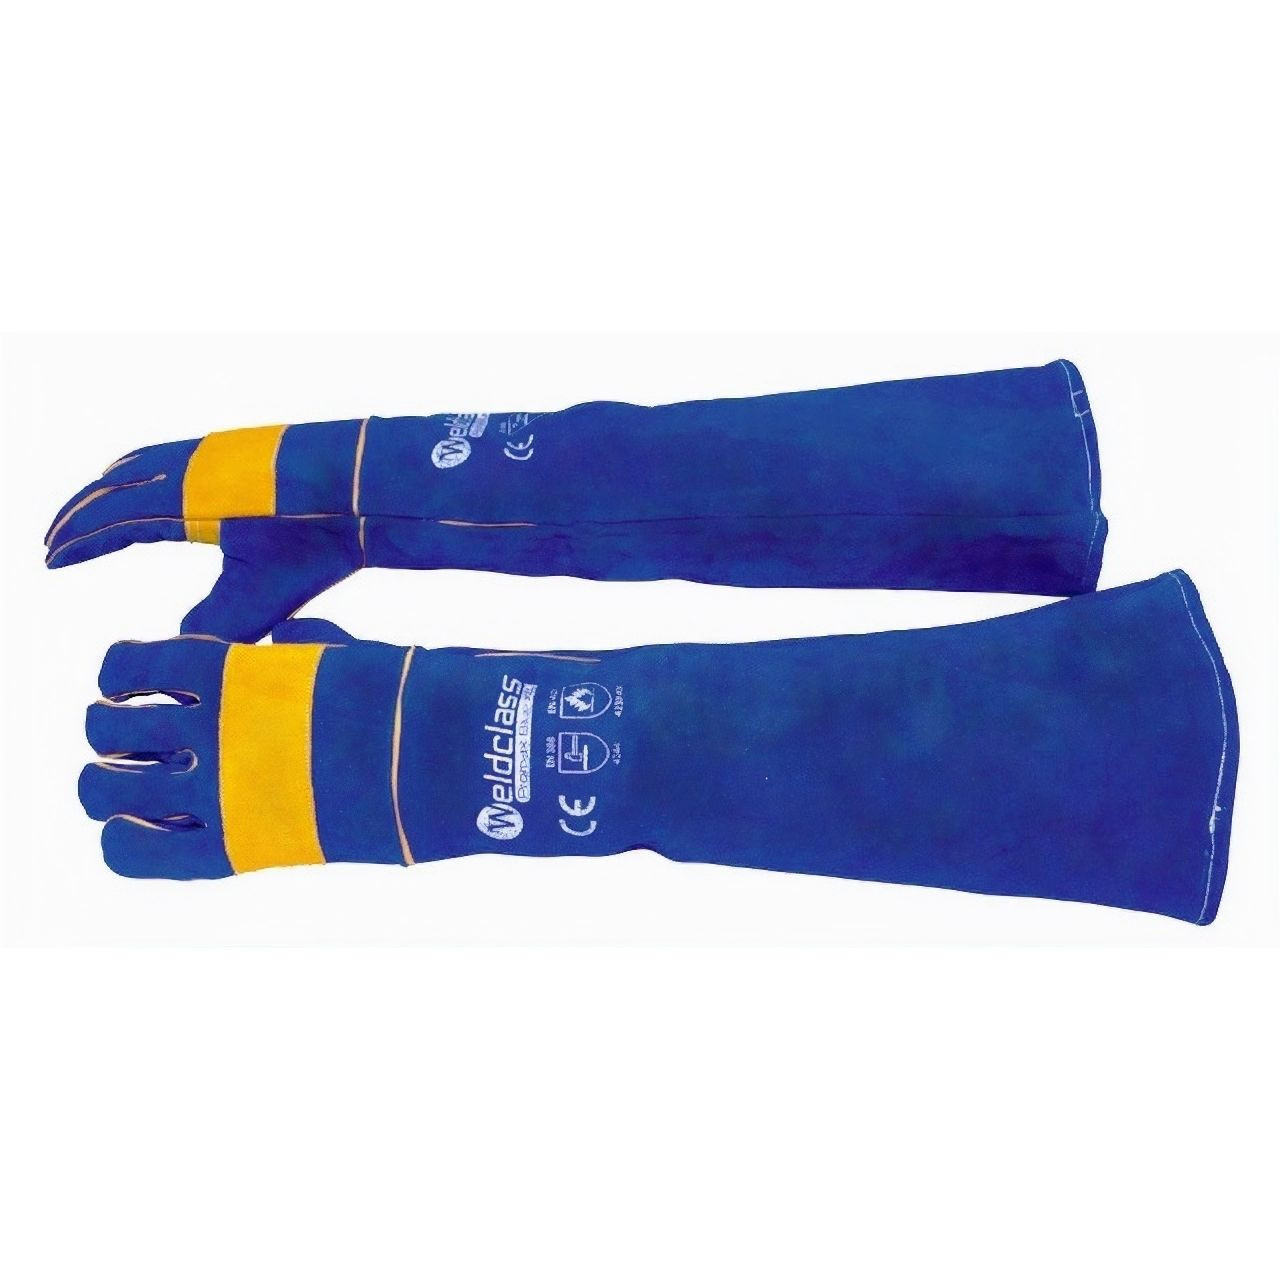 Weldclass Promax Blue XC 680mm Welding Gloves